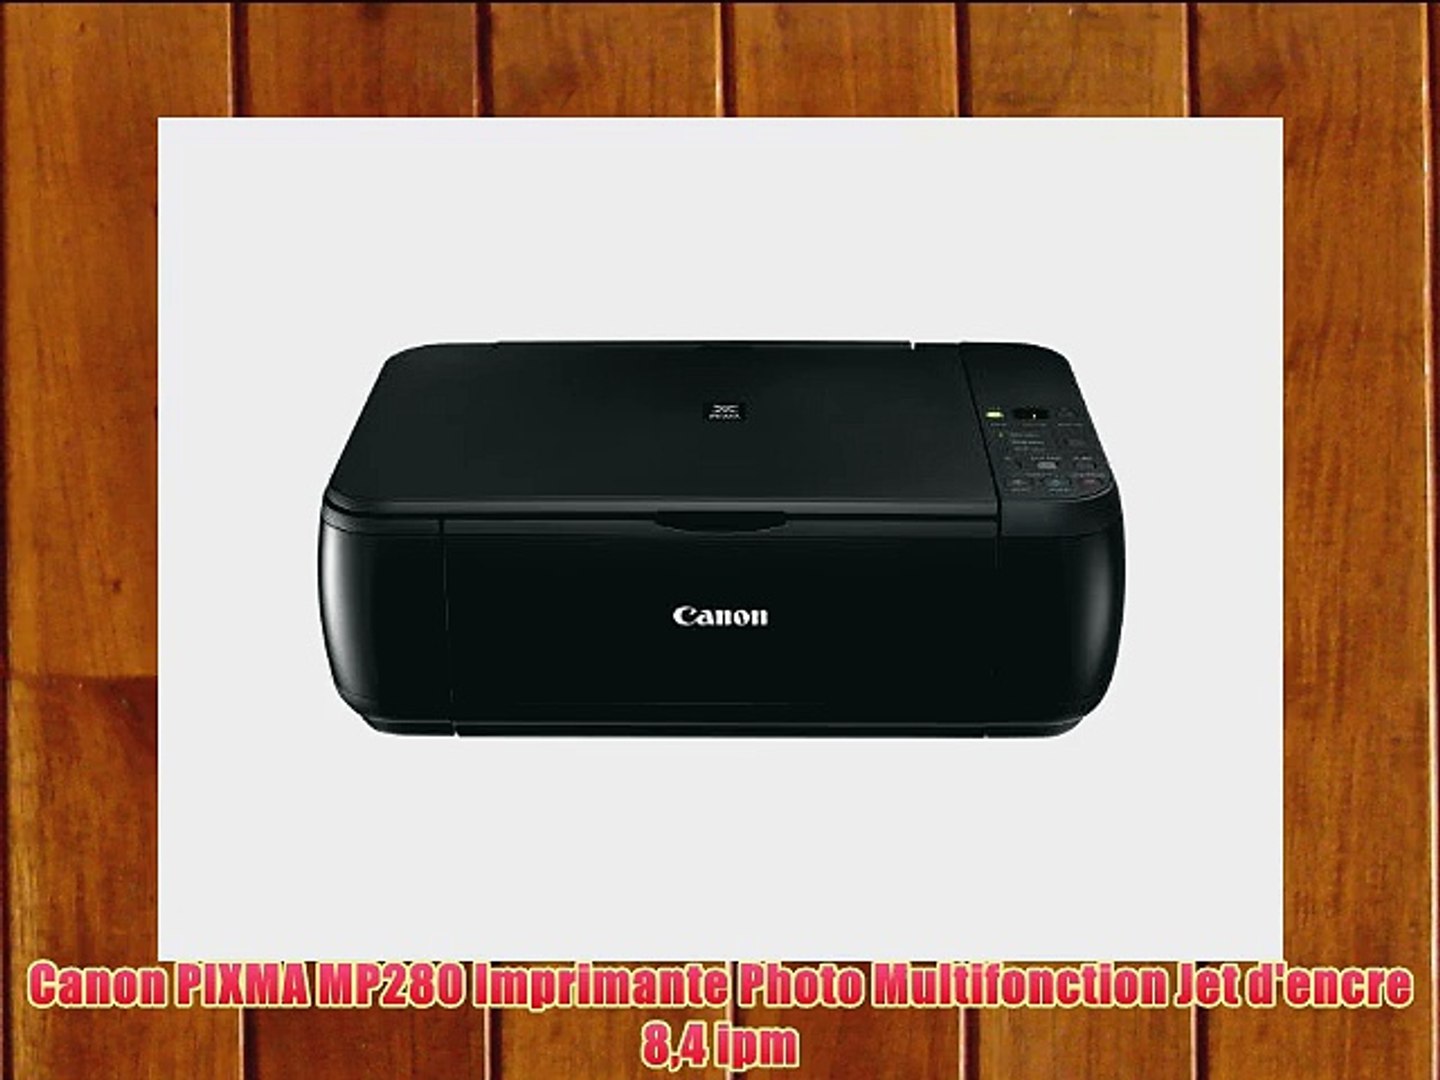 Canon PIXMA MP280 Imprimante Photo Multifonction Jet d'encre 84 ipm - video  Dailymotion